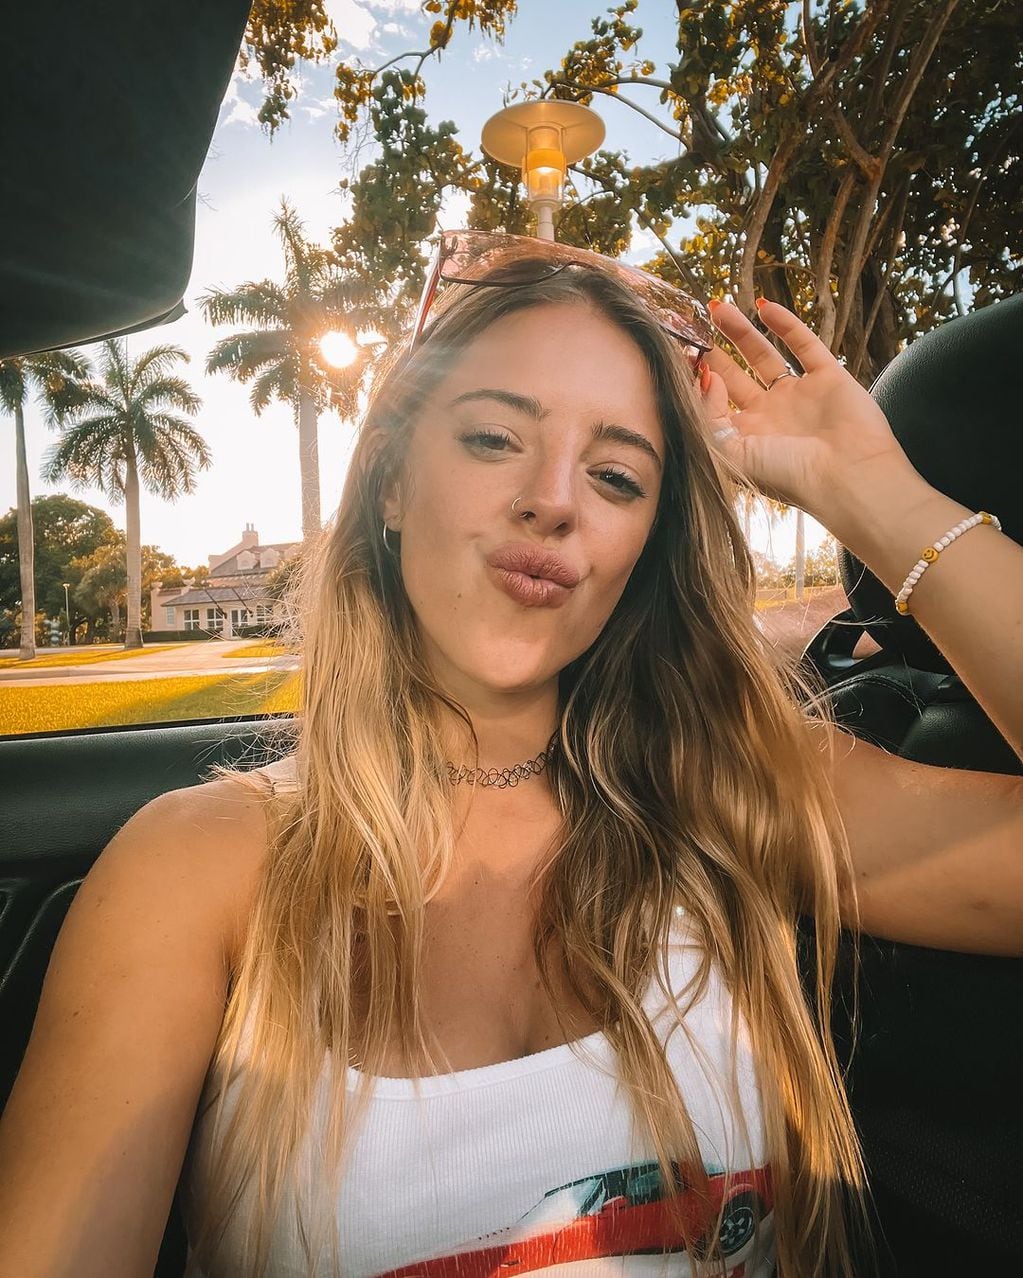 Corpiño de encaje y mucho escote: Nati Jota paralizó Instagram con un sensual look desde Miami